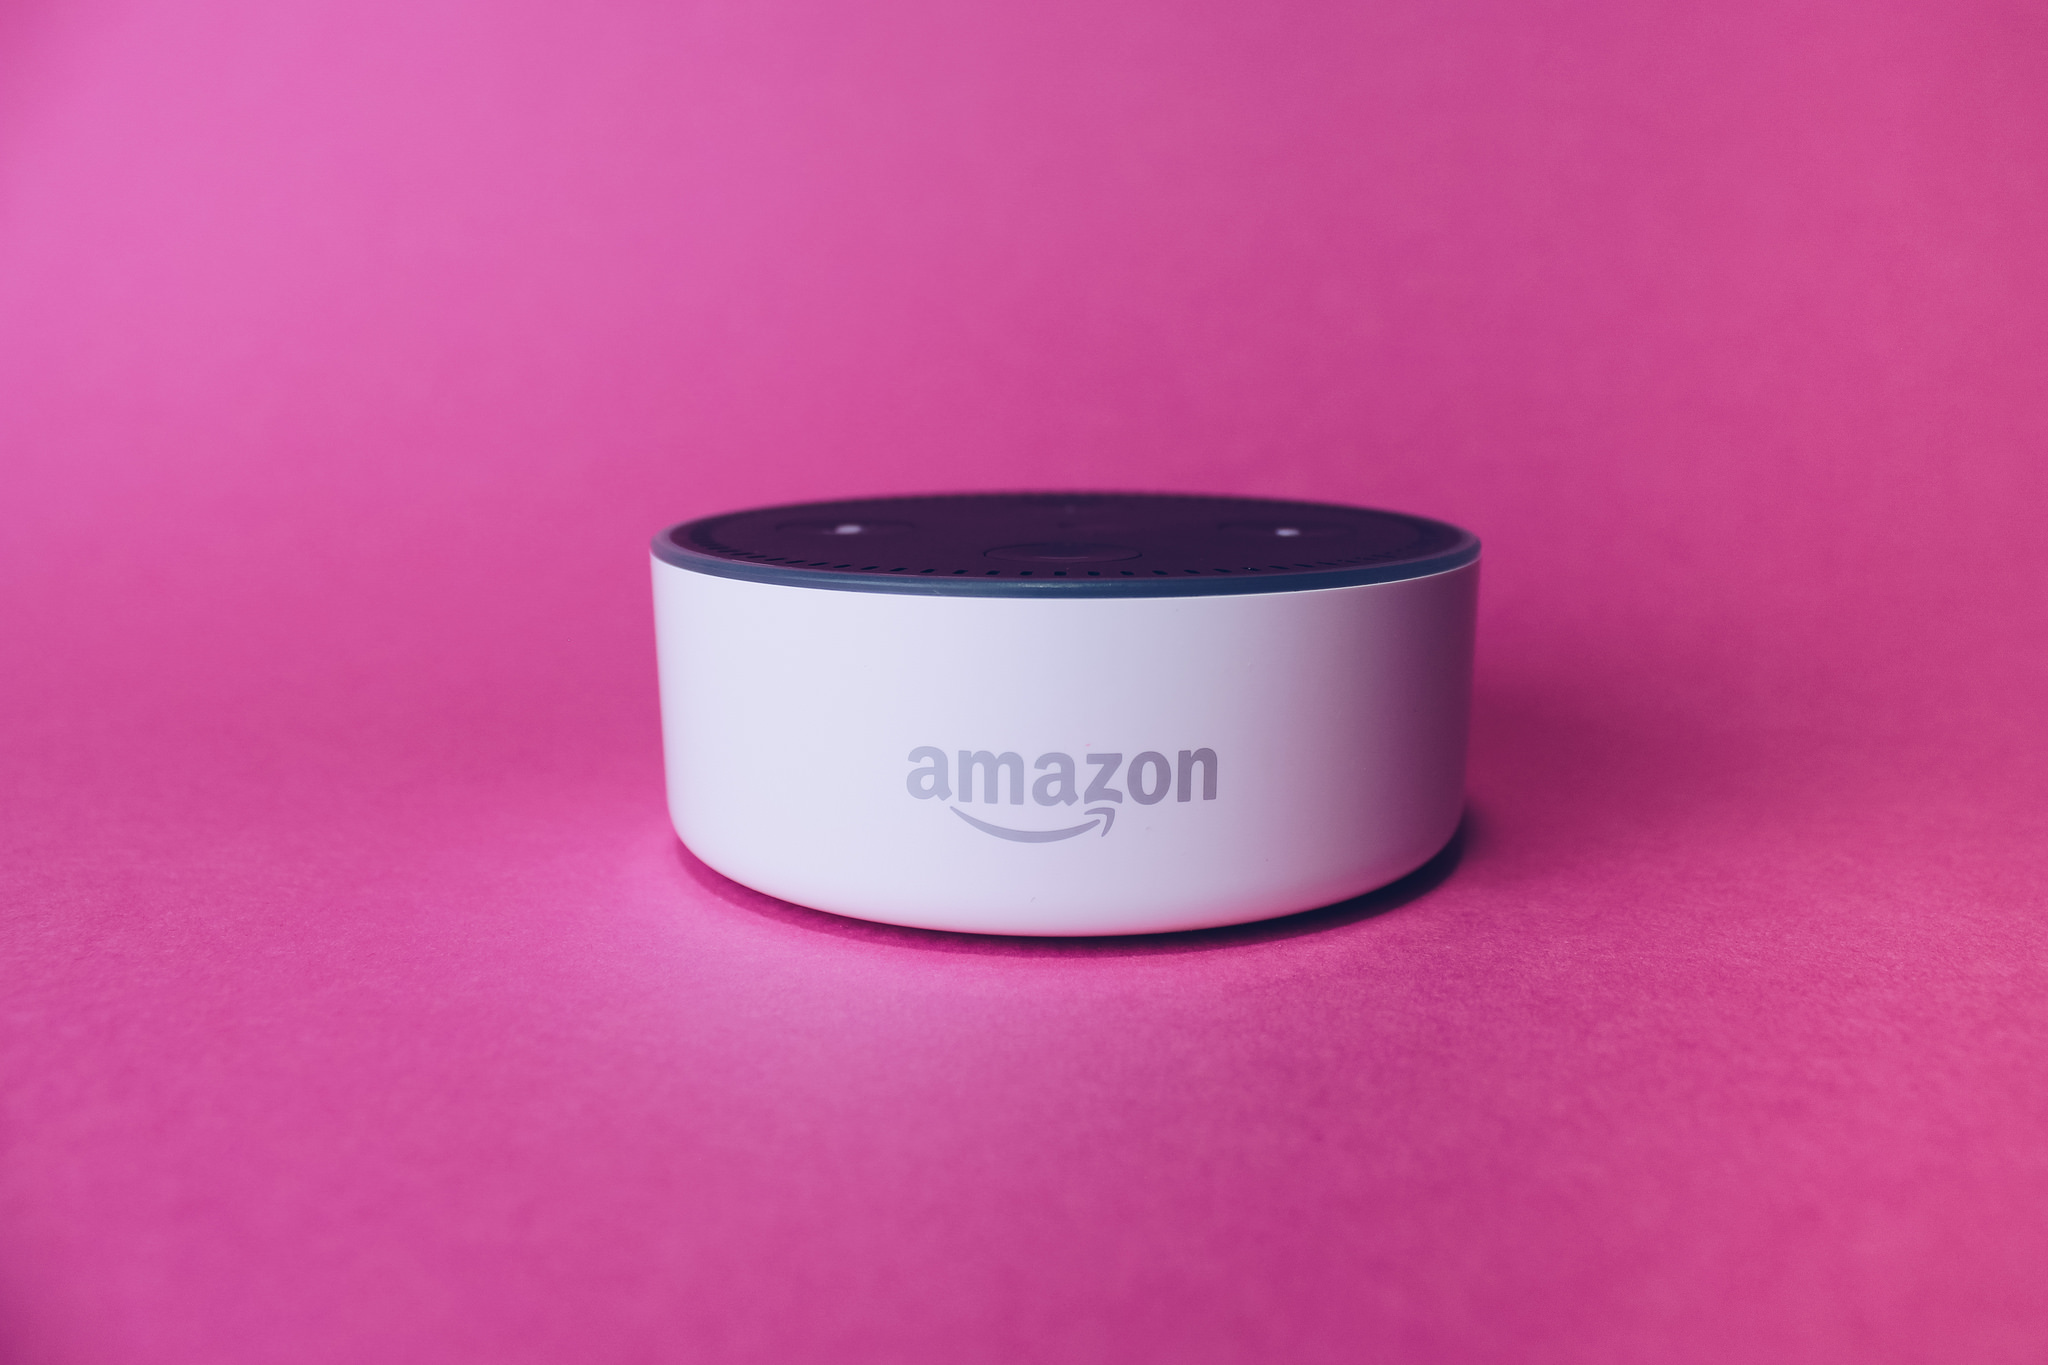  Amazon anuncia récord de ventas pese a caída de Alexa el día de Navidad